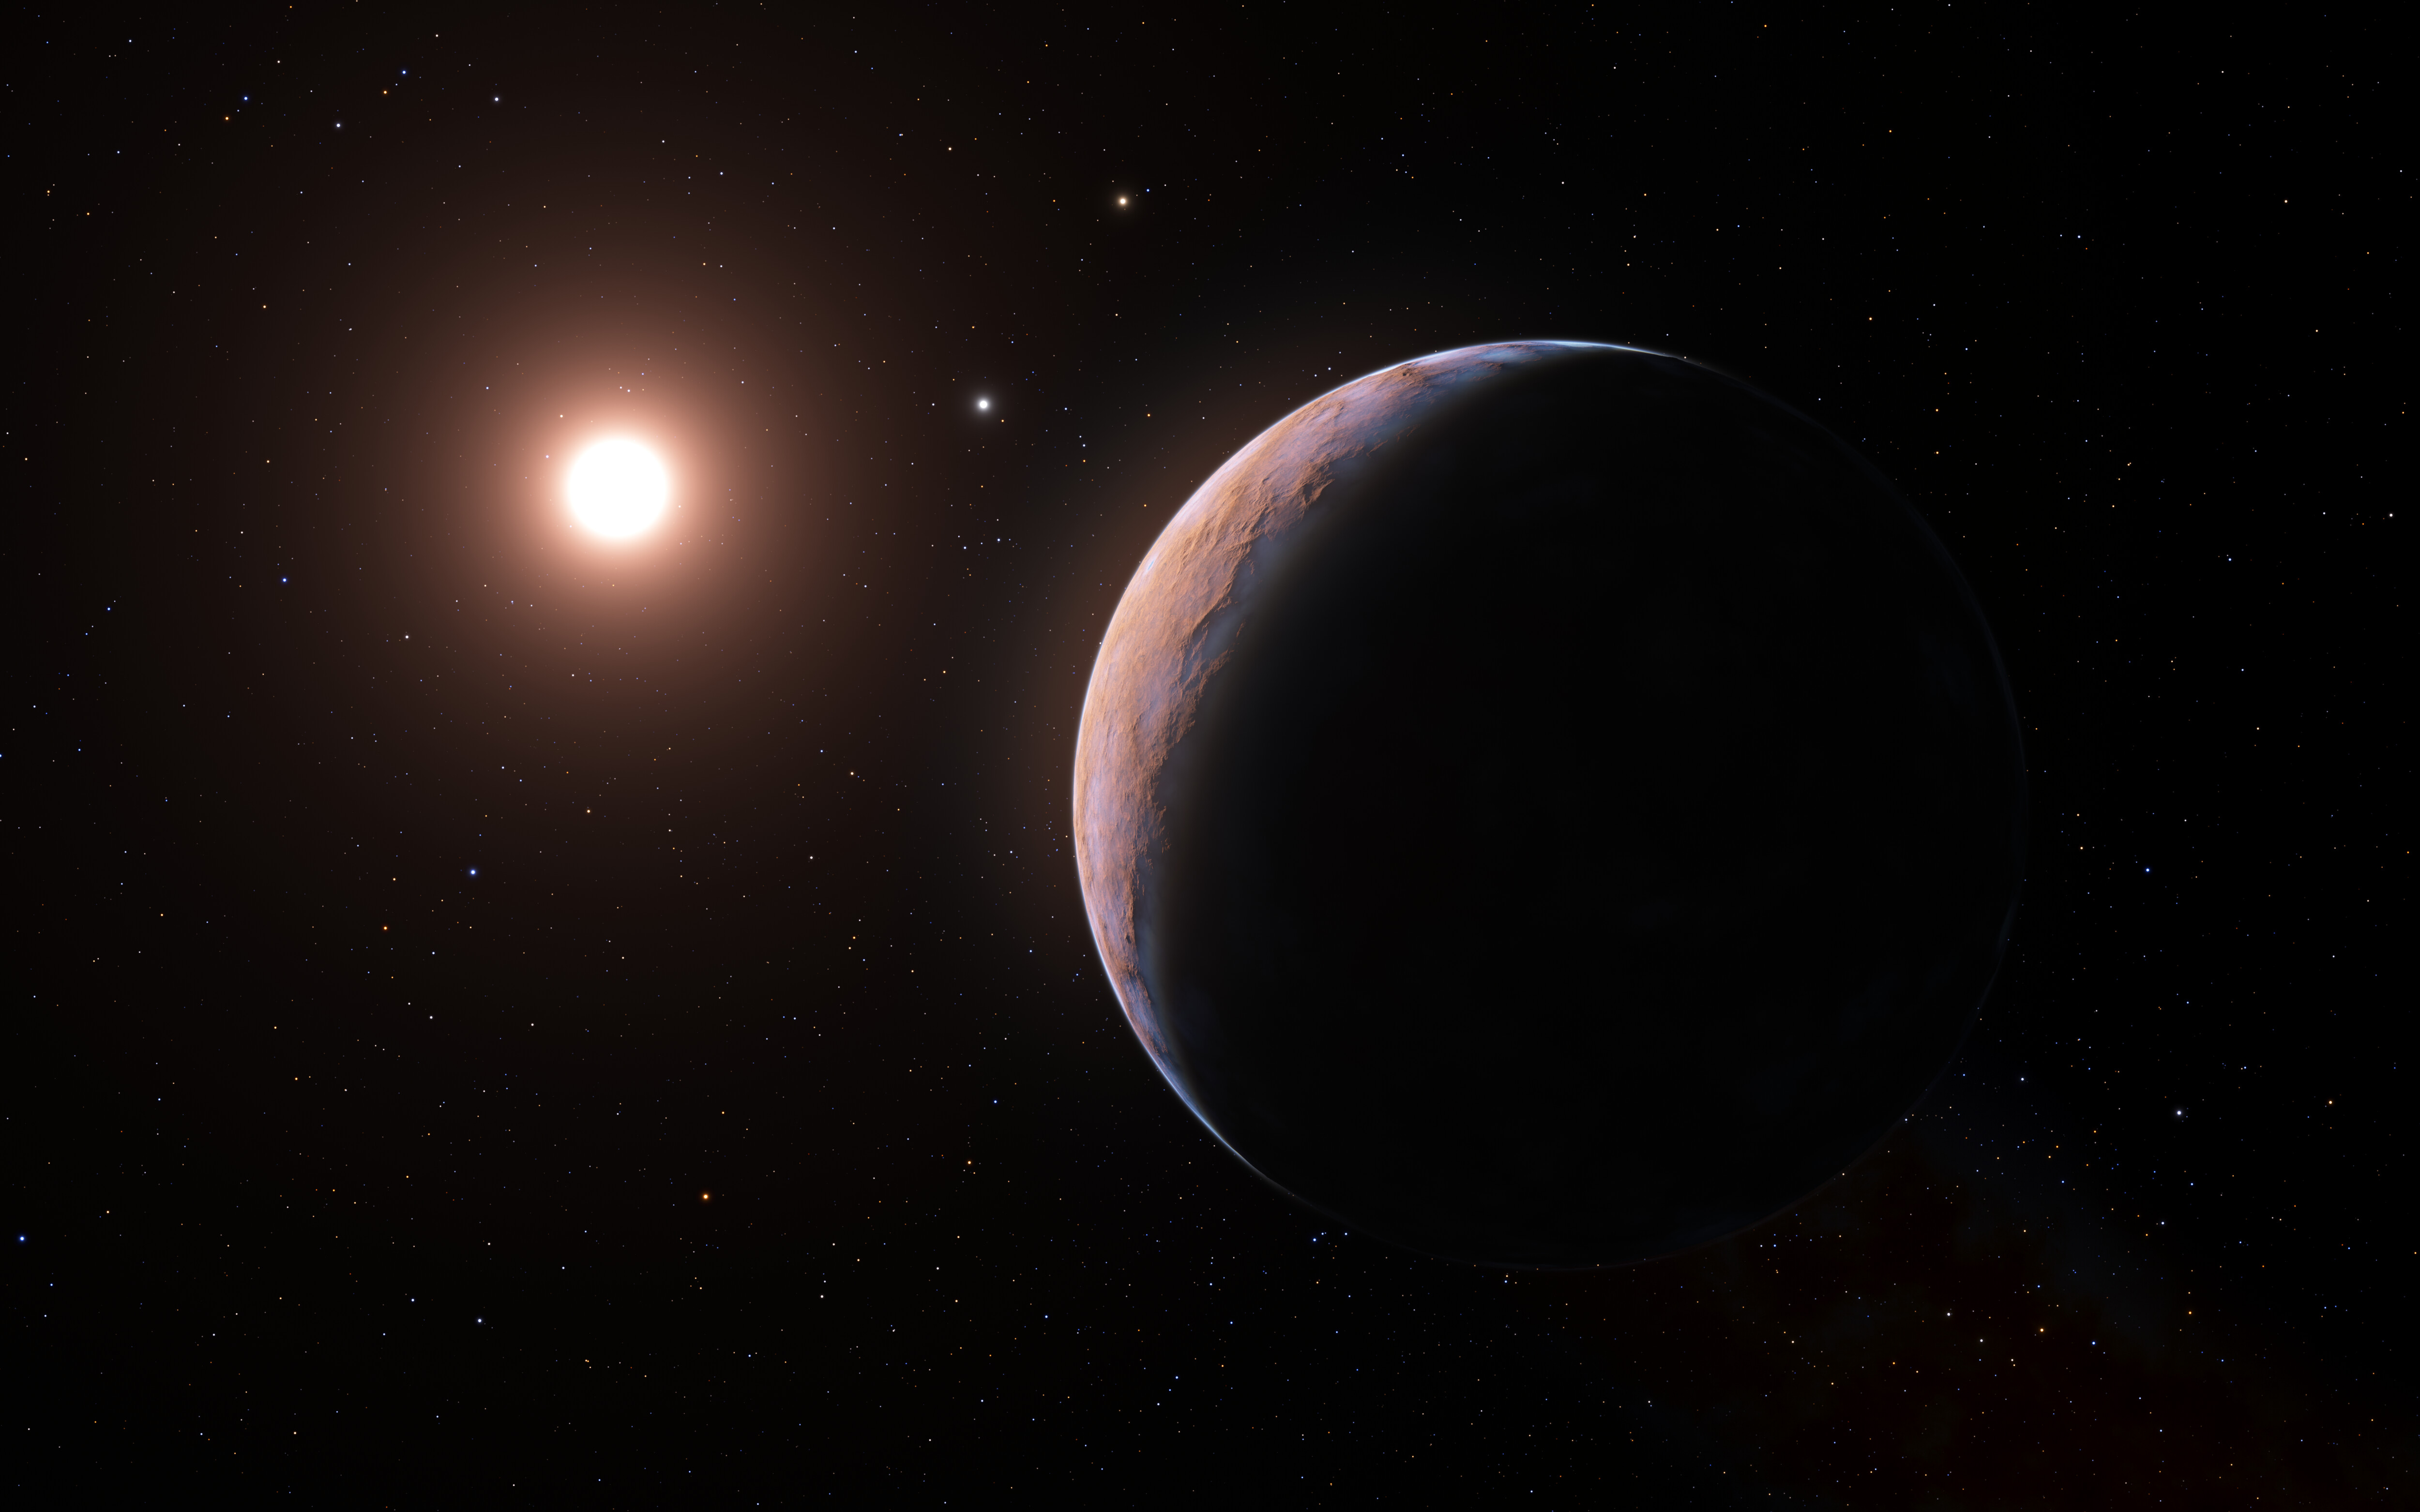 Proxima d: a tiny exoplanet neighbor next door